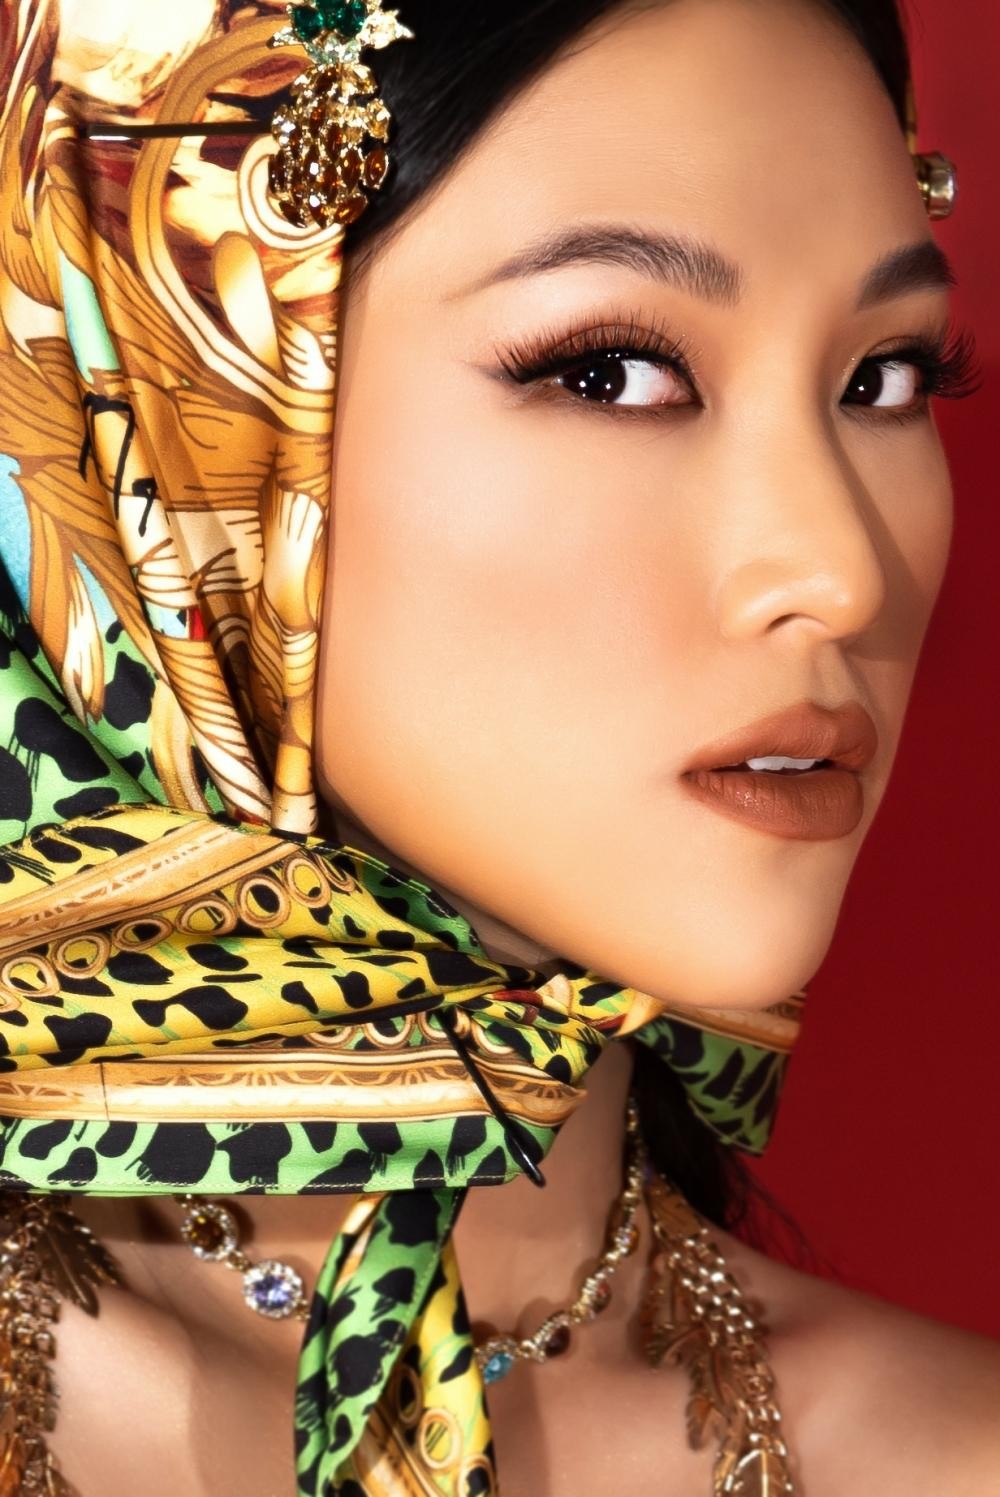 Á hậu Hoàng Oanh khiến khán giả trầm trồ với phong cách lạ lẫm trong bộ ảnh mới - Ảnh 5.